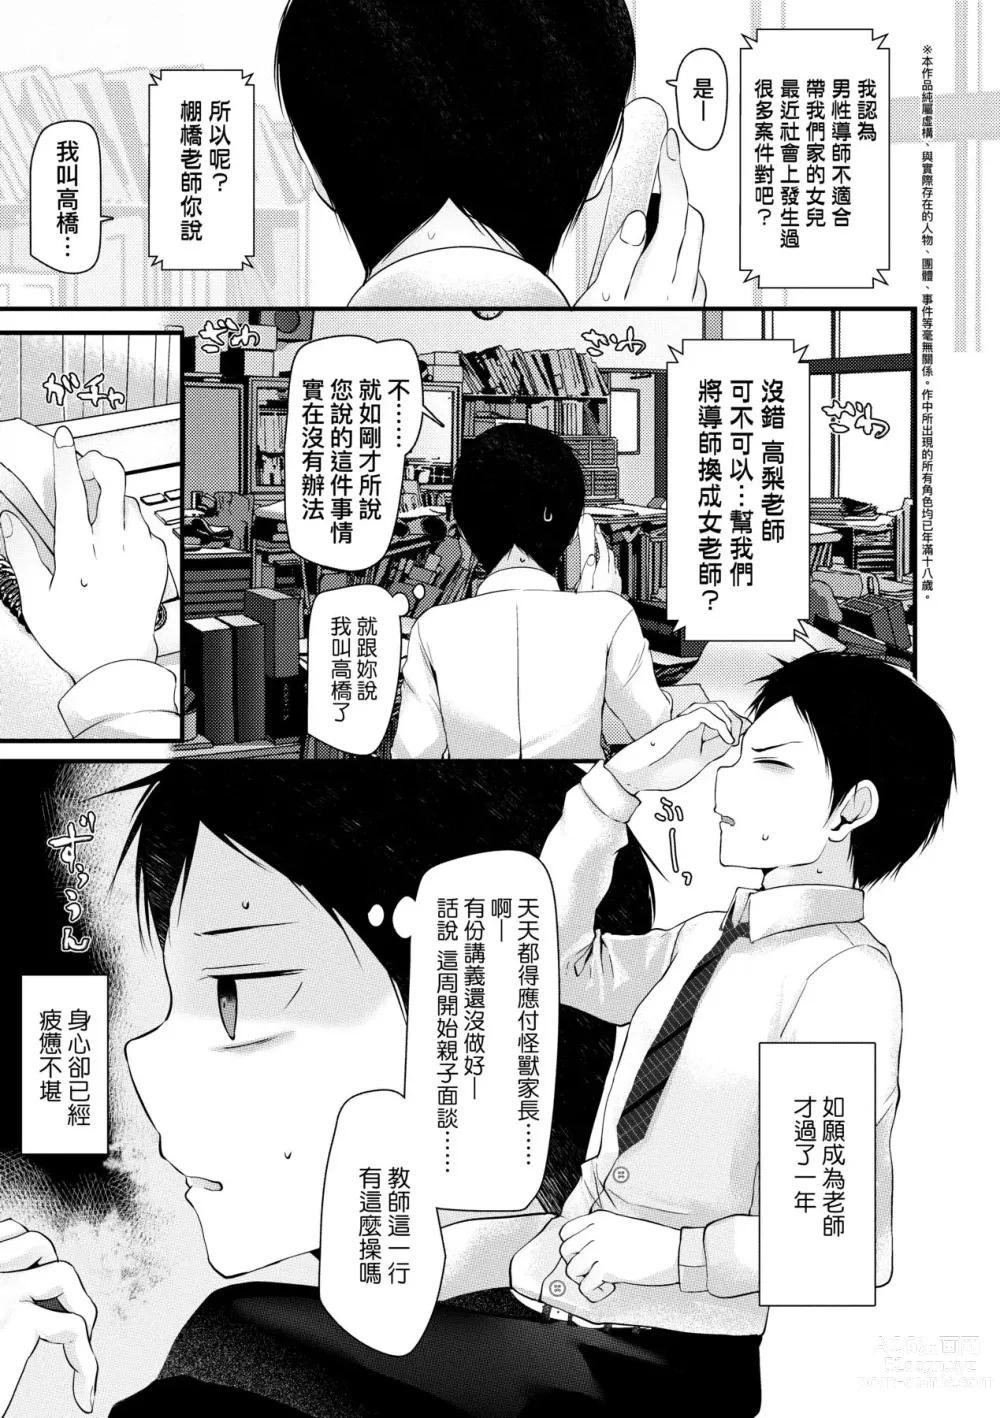 Page 6 of manga JK.REFLE (decensored)